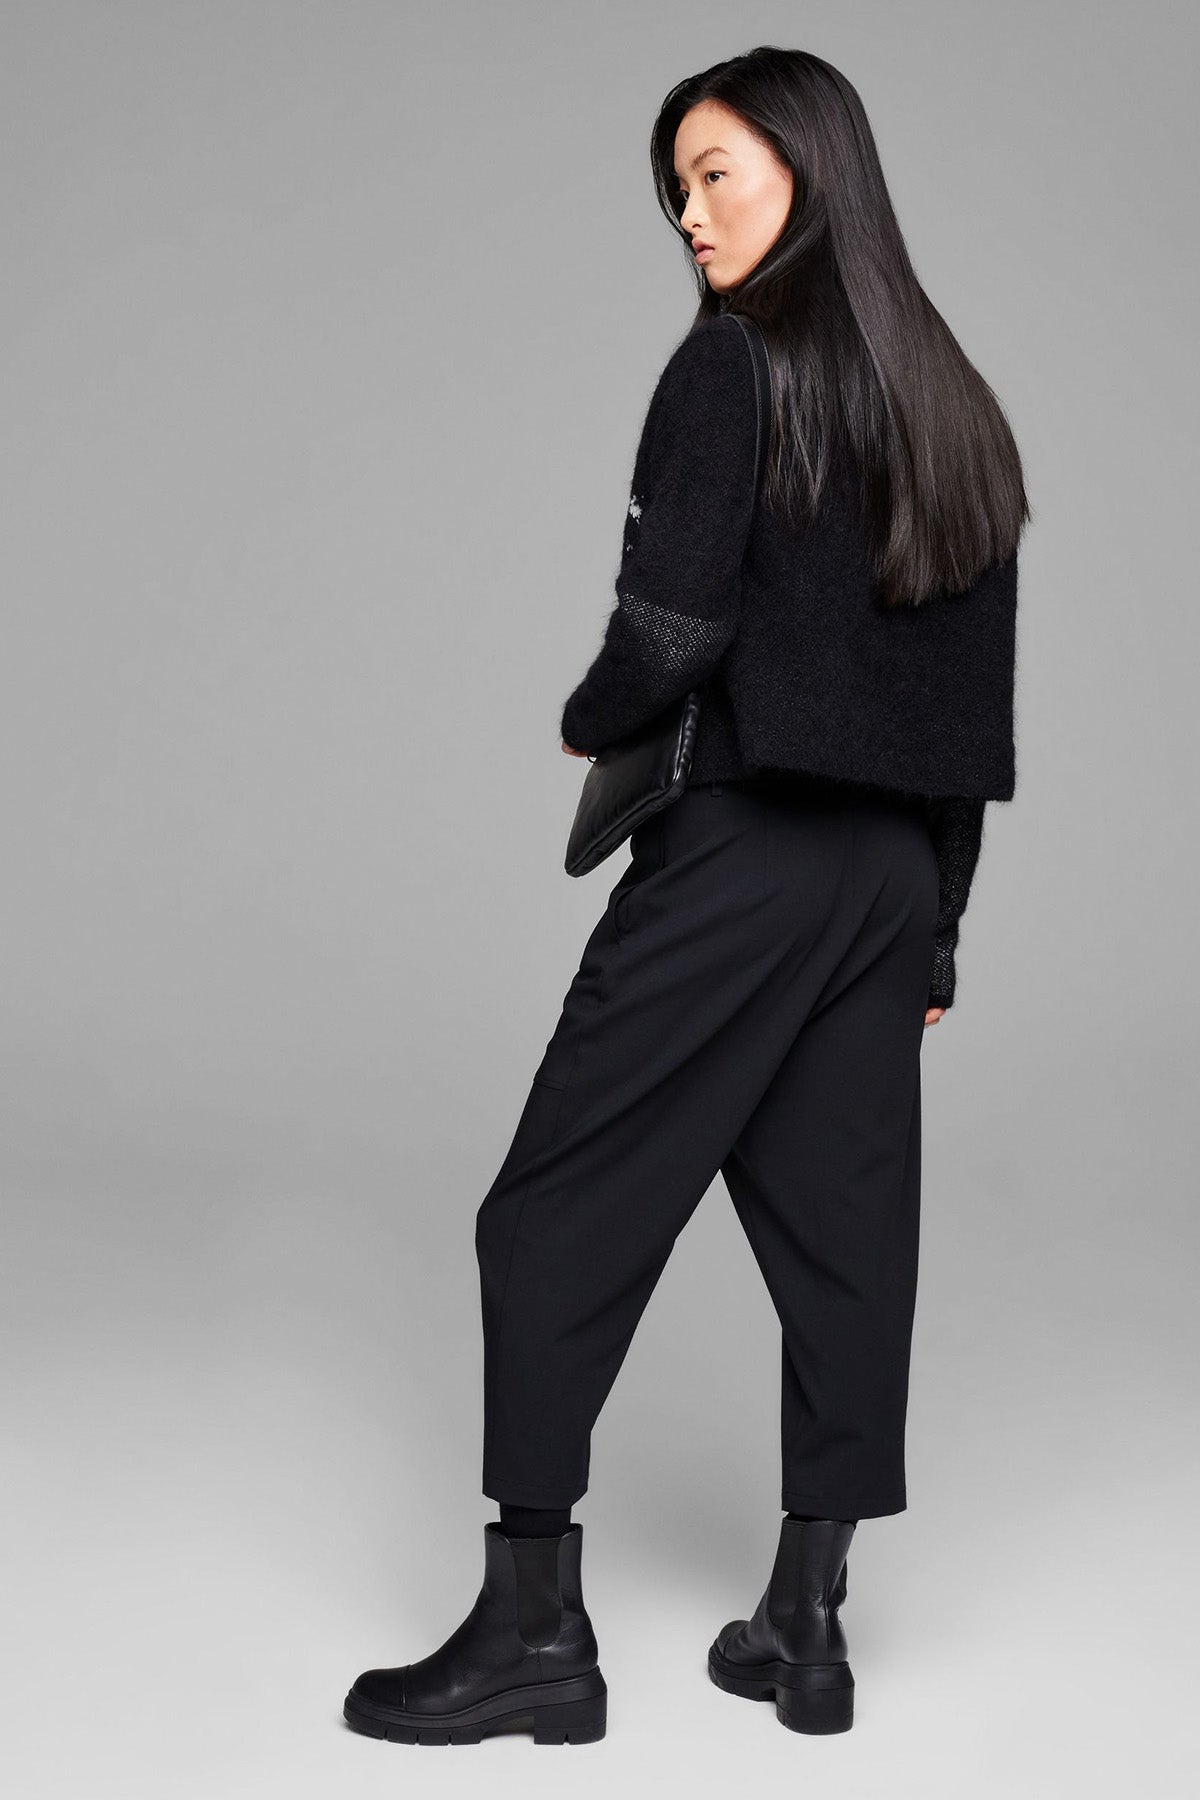 Sarah Pacini Yün Örgü Triko Ceket-Libas Trendy Fashion Store